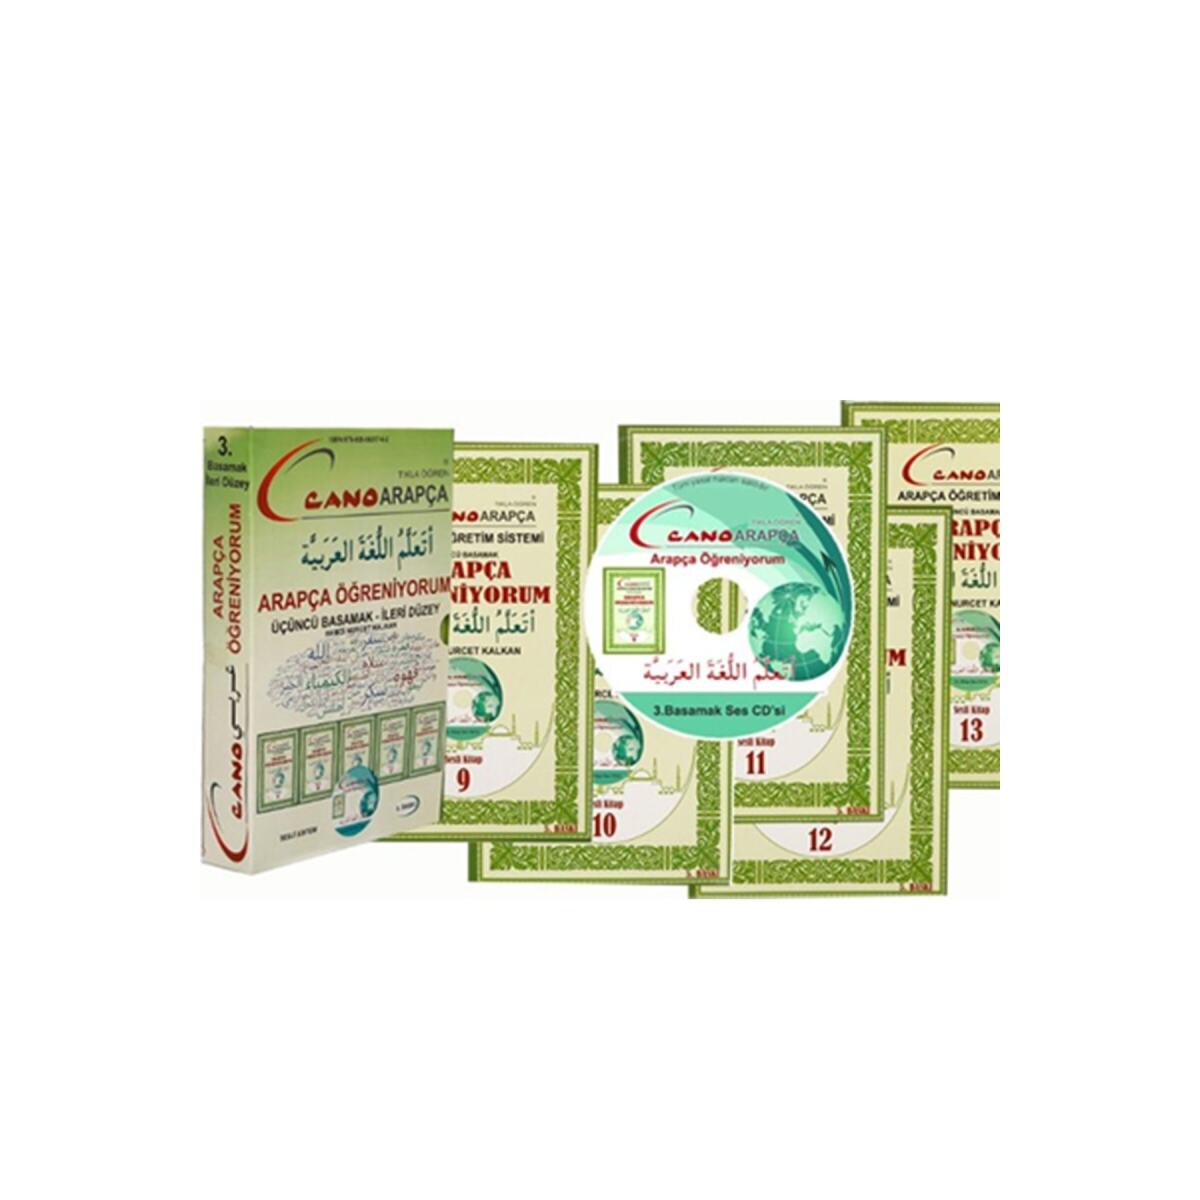 Cano Arapça Öğretim Sistemi 3.Basamak + Ingilizce - Arapça Online Eğitim+ Ingilizce Egramer Hediyeli